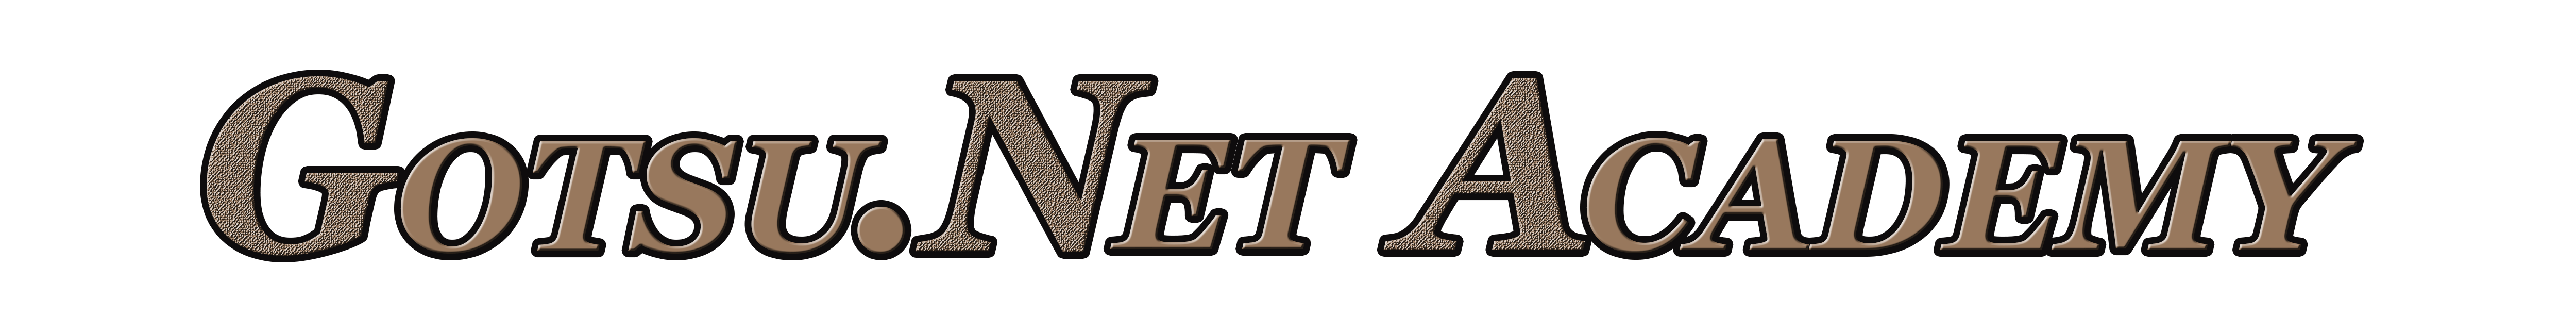 GOTSU.NET Academy